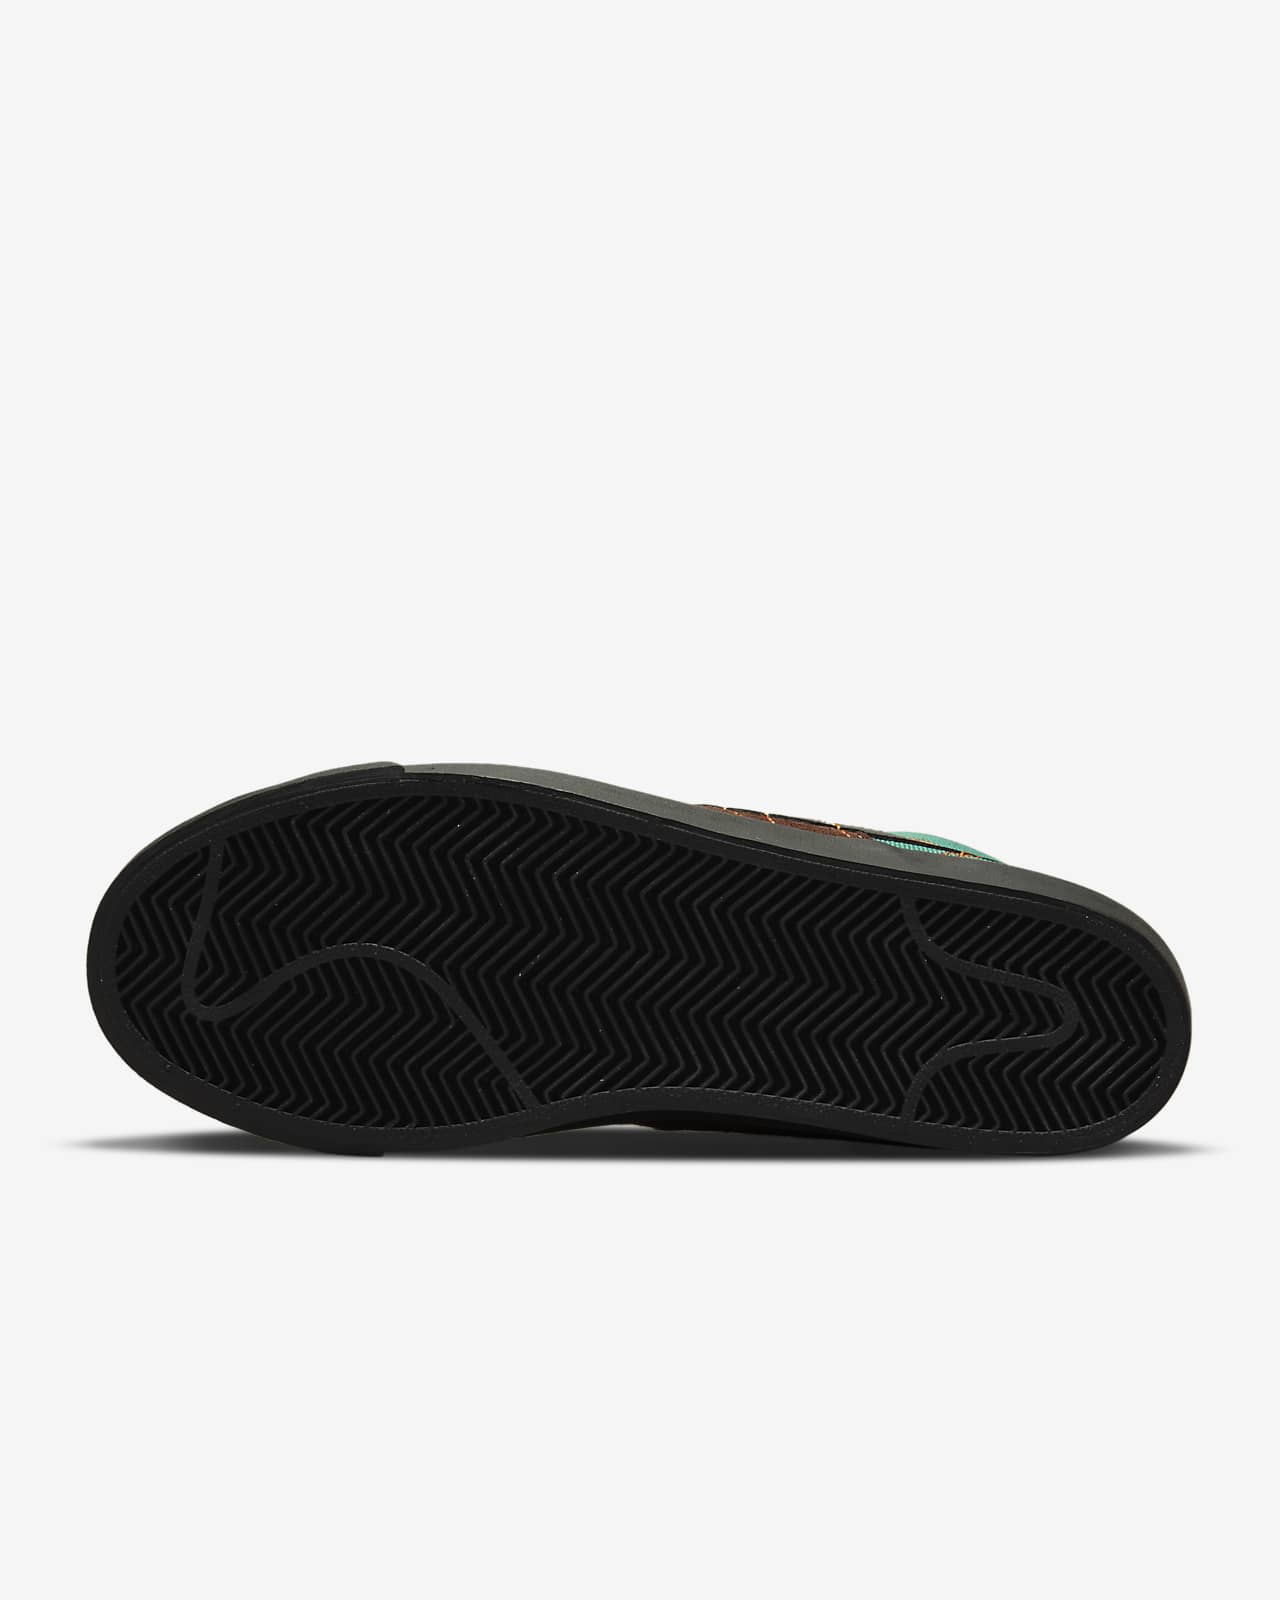 Nike SB Zoom Blazer Mid Premium Skate Shoes